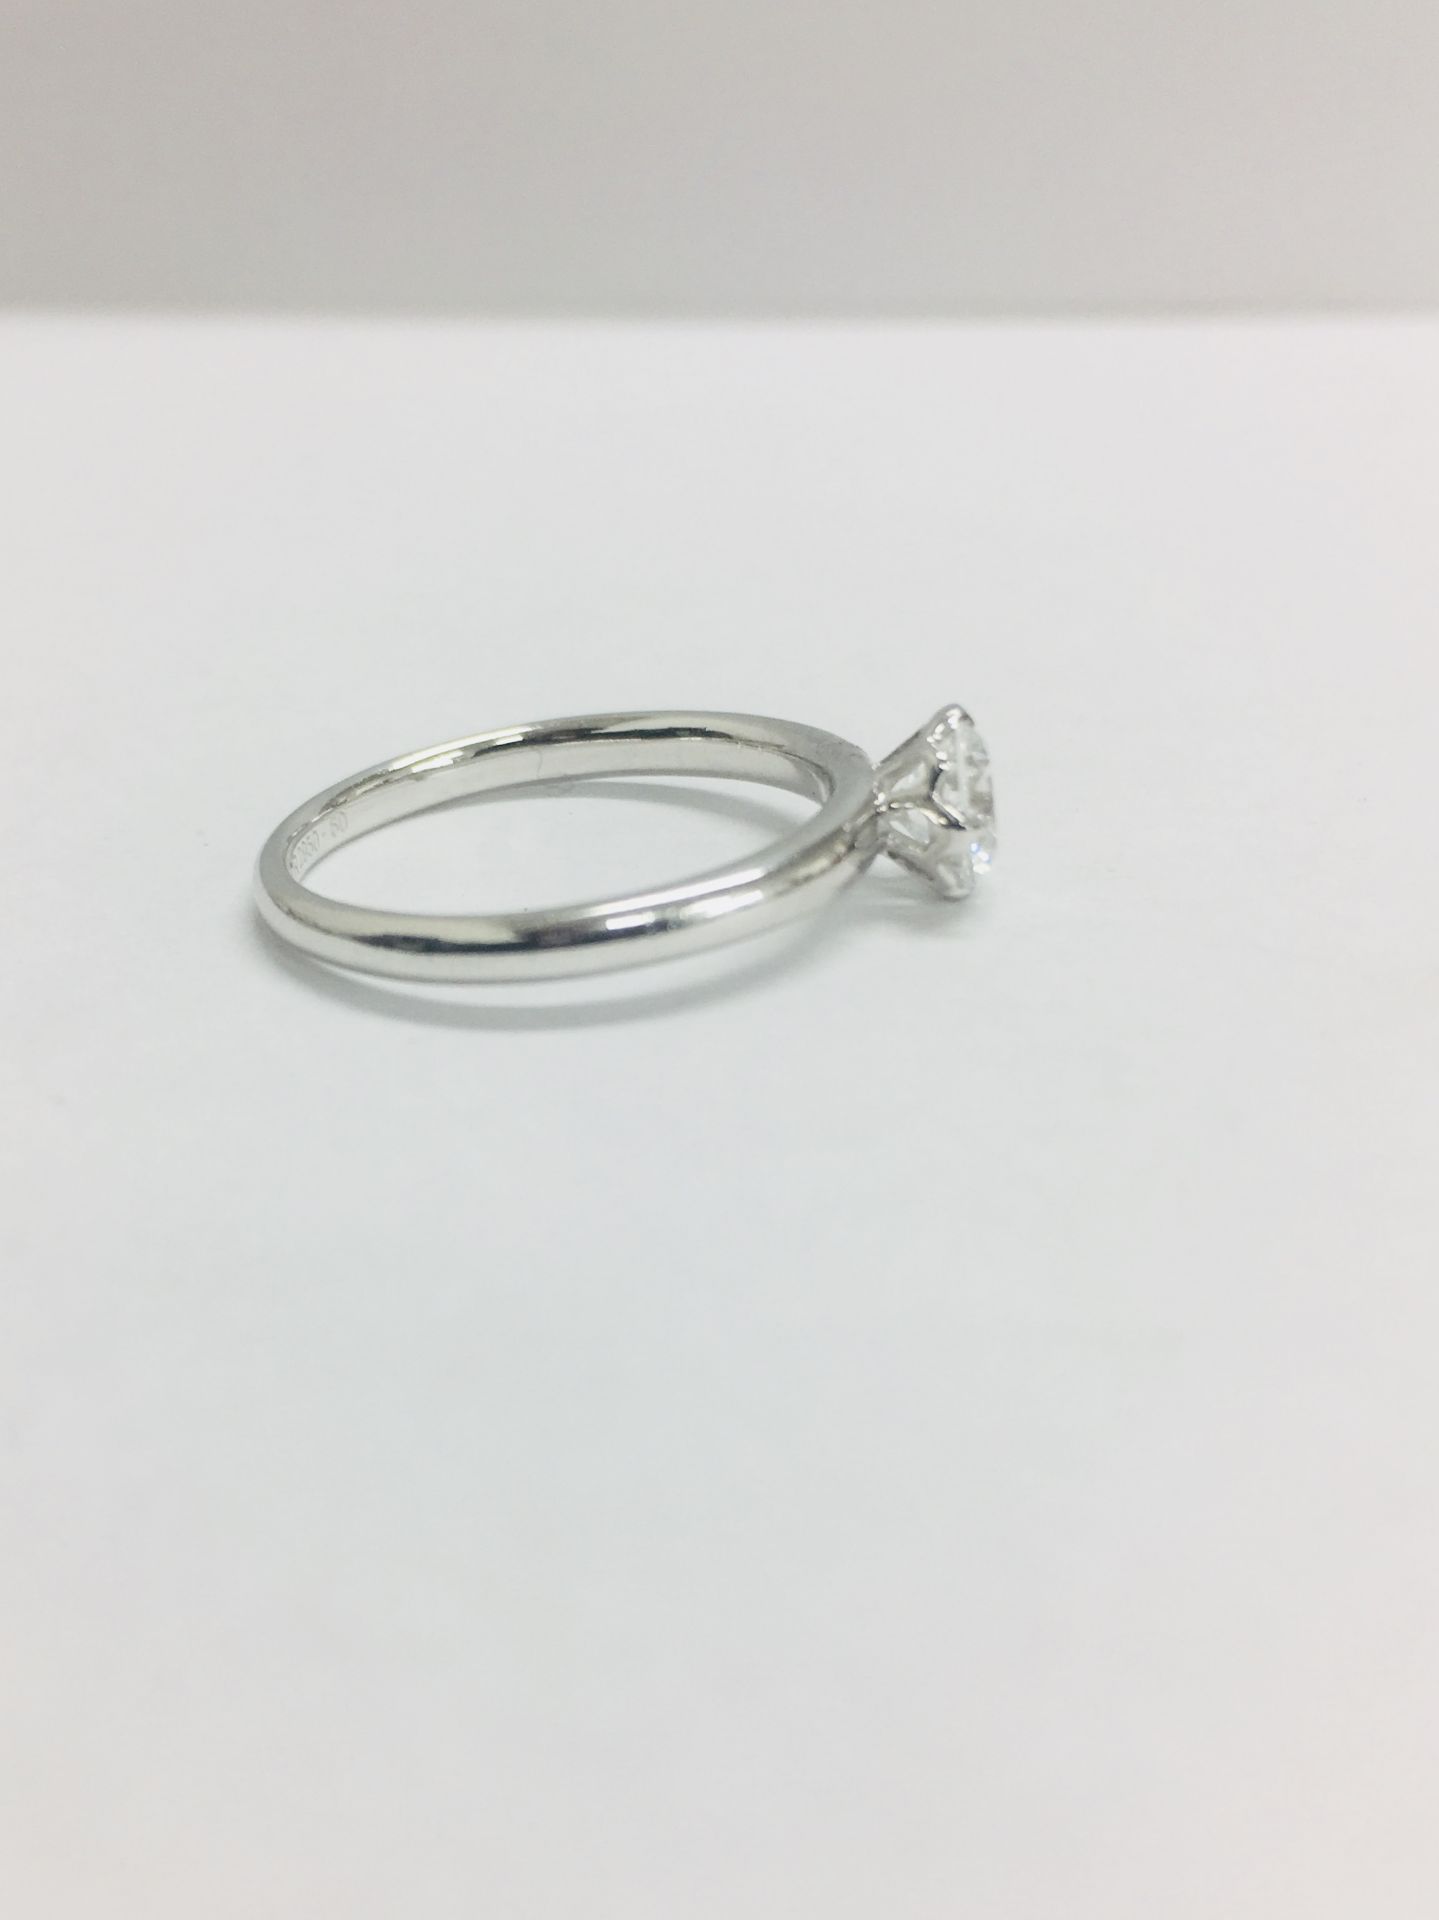 Platinum diamond solitaire ring,050ct h colour vs clarity natural diamond - Bild 5 aus 6